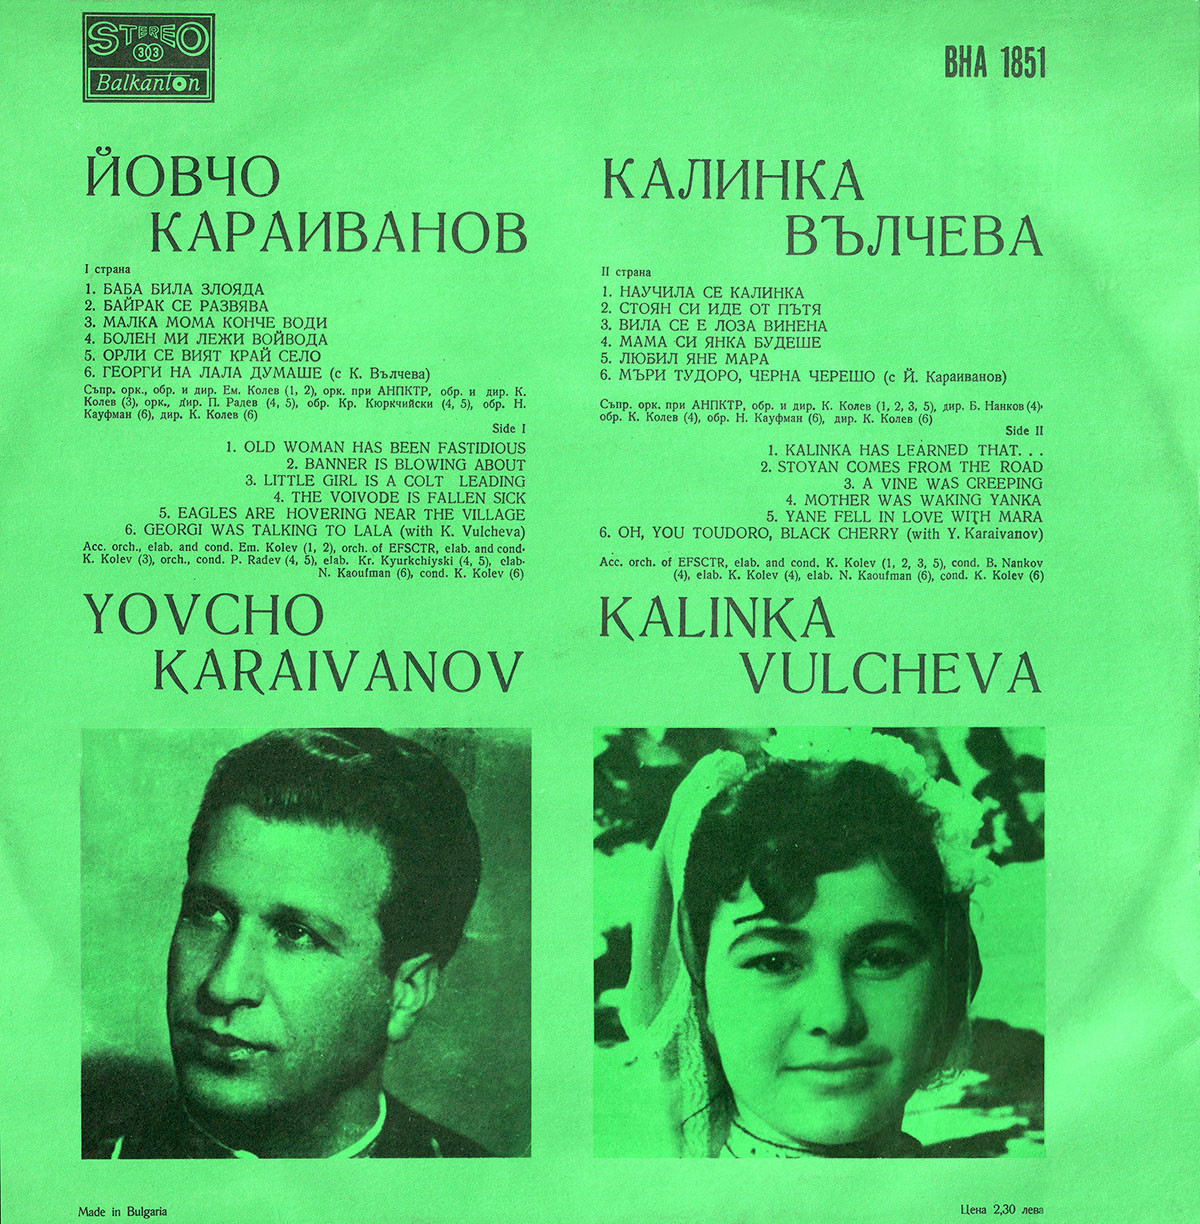 Изпълнения на Йовчо Караиванов и Калинка Вълчева